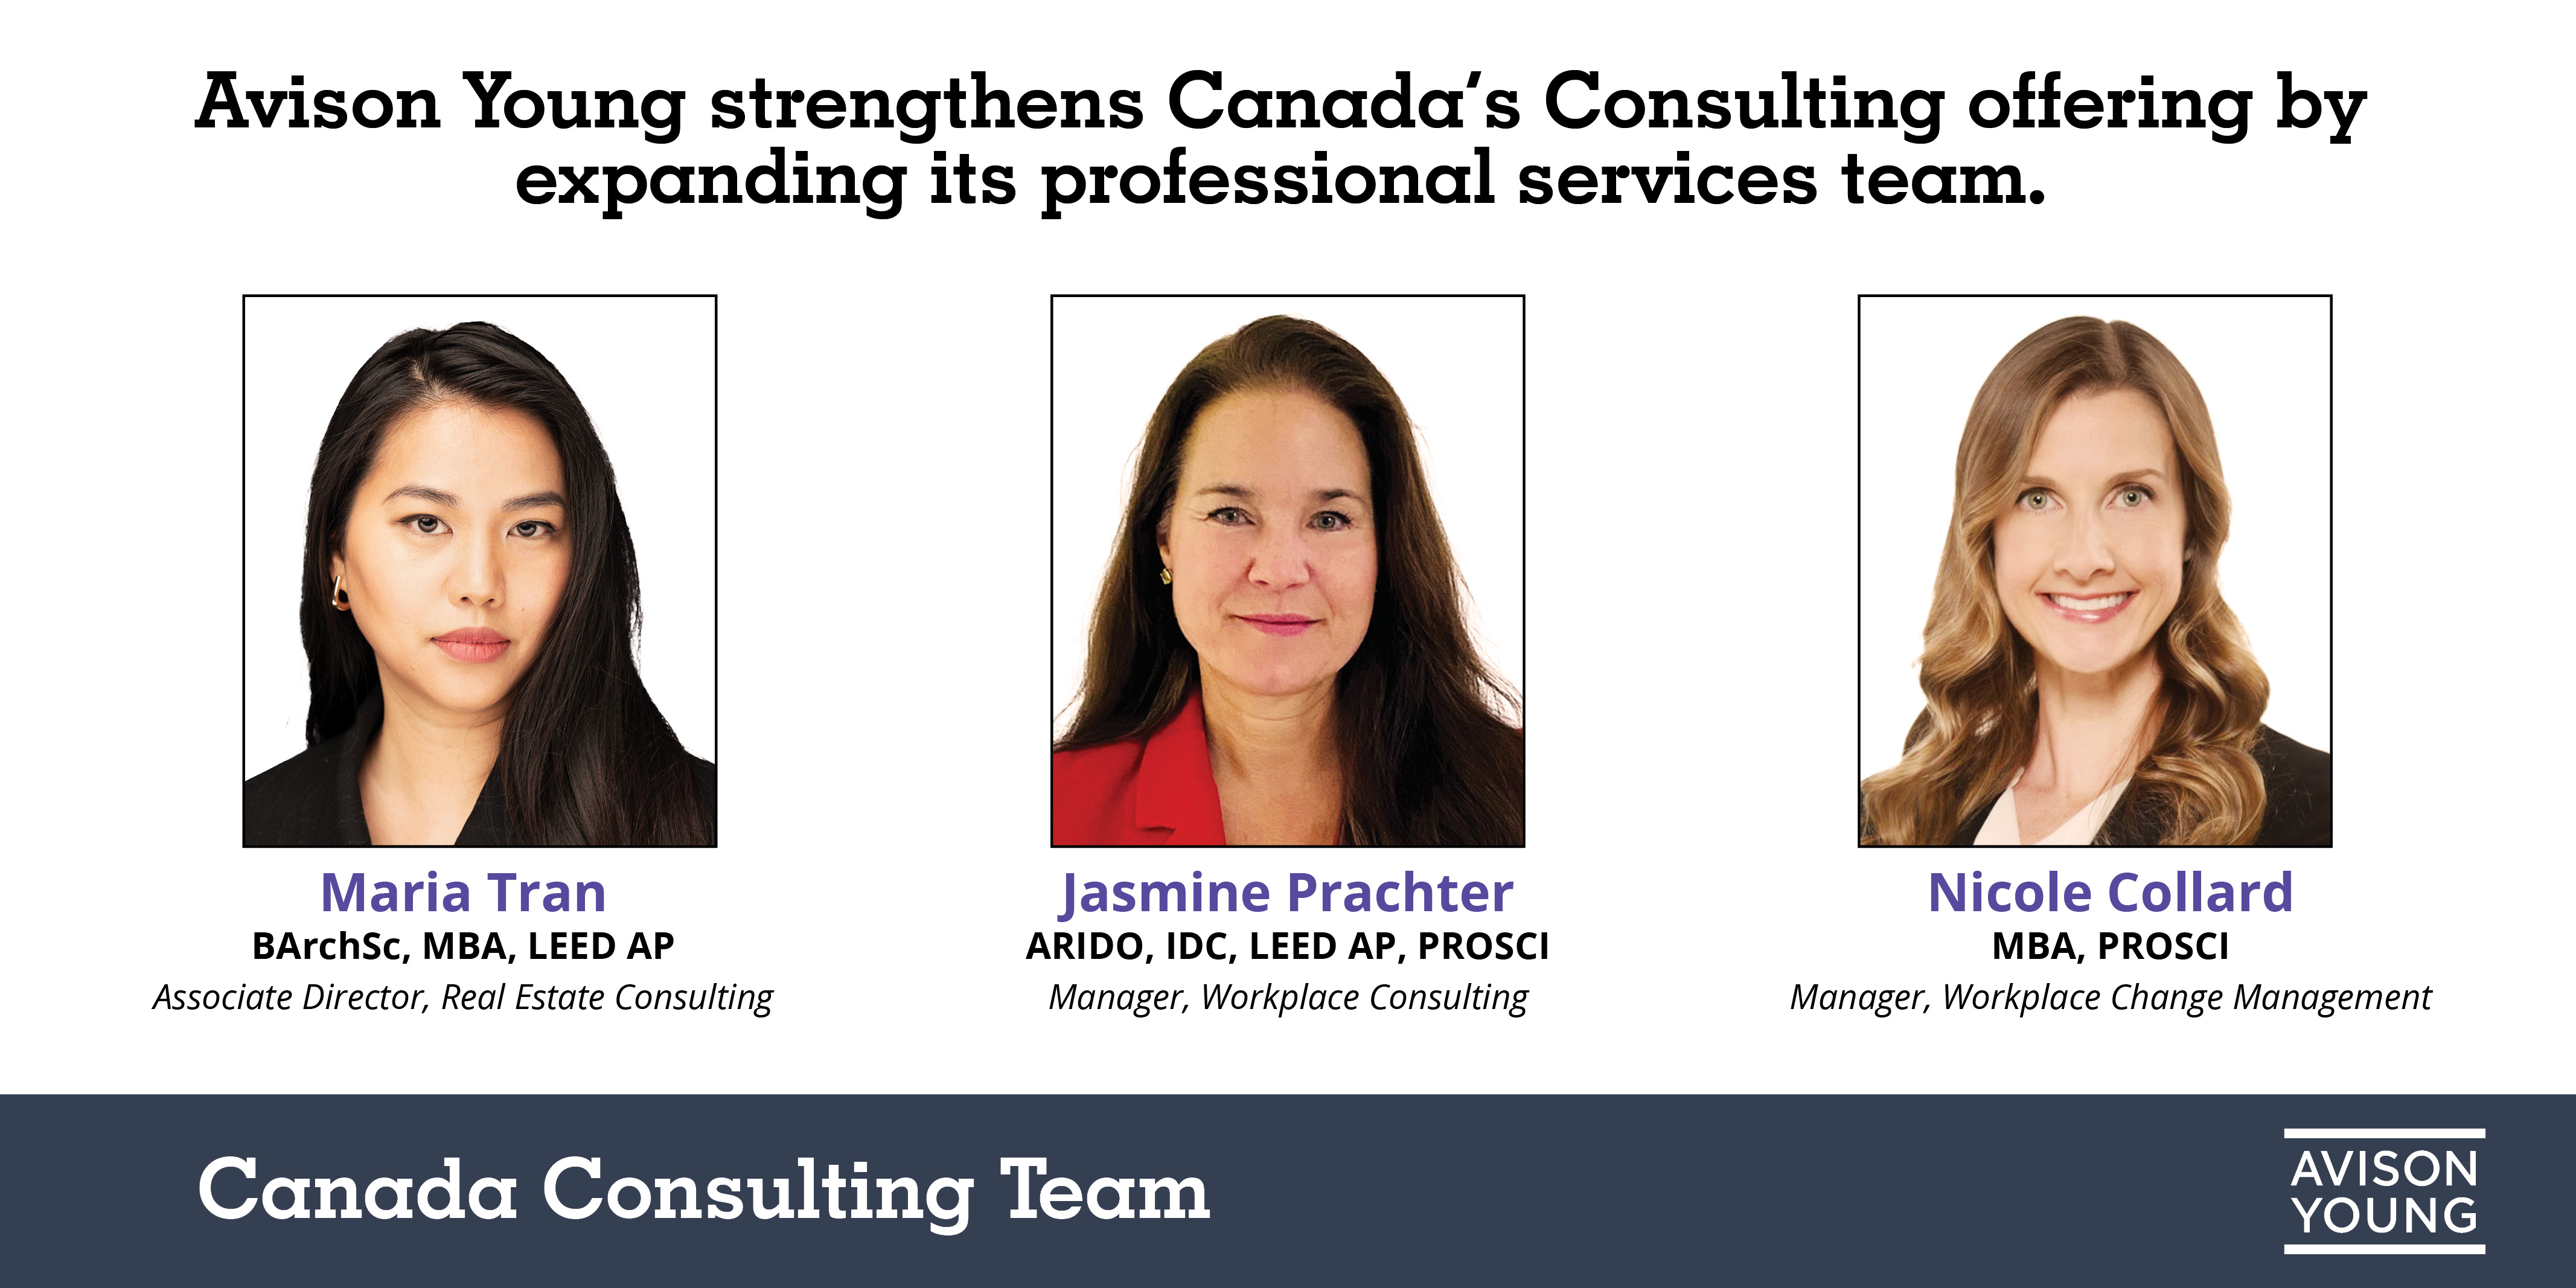 Avison Young renforce l'offre de consultation au Canada en élargissant son équipe de services professionnels.